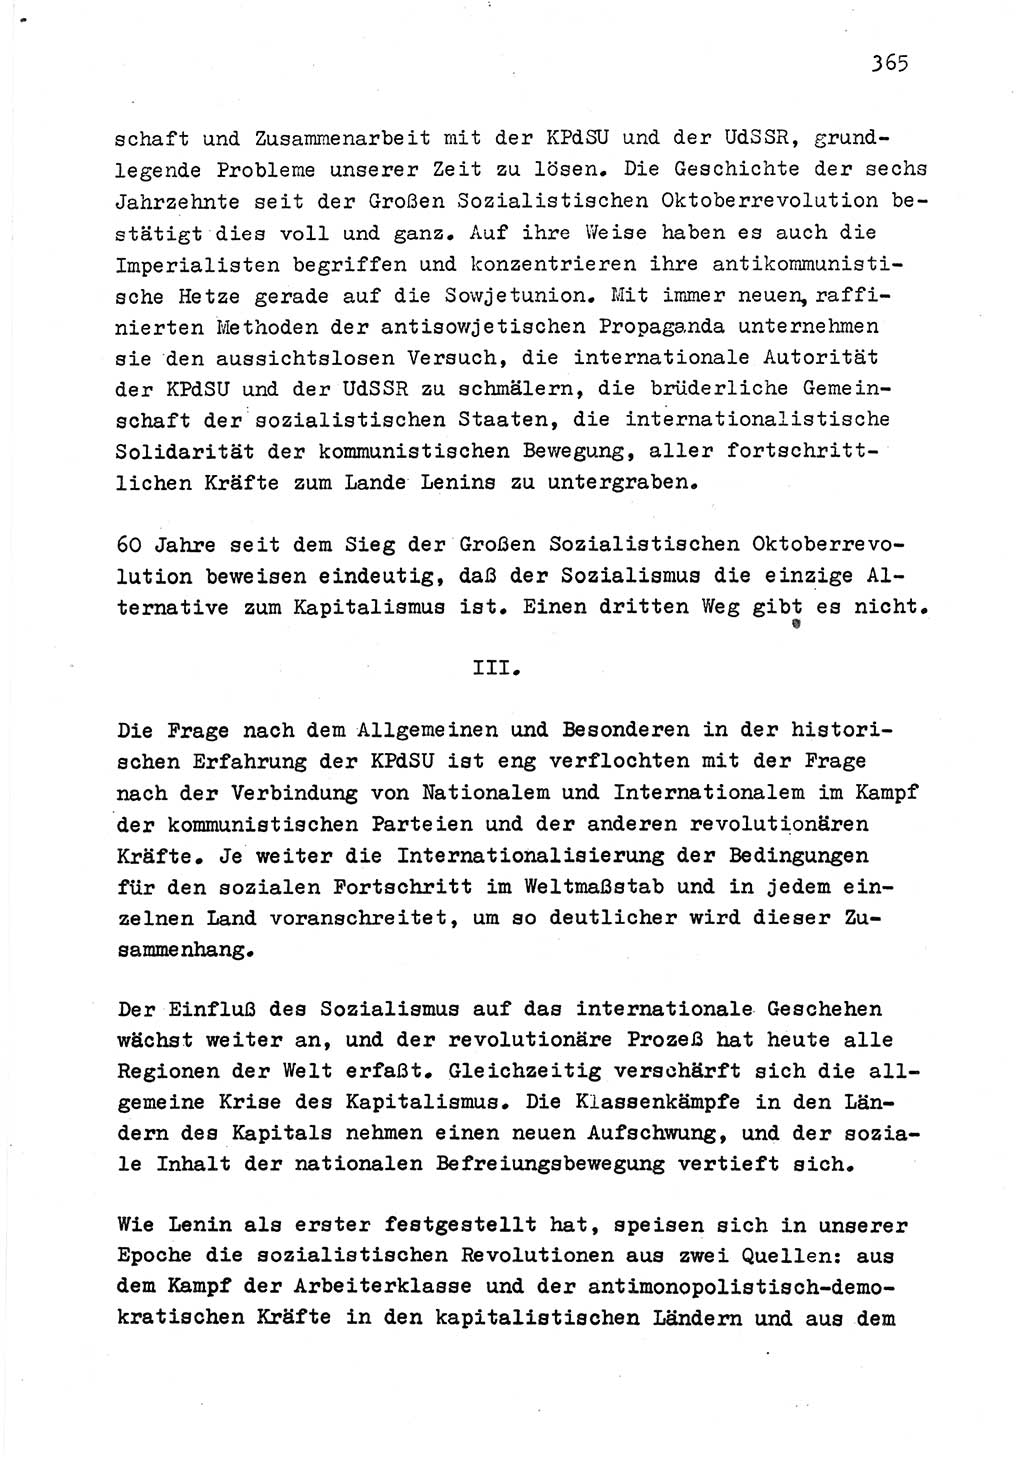 Zu Fragen der Parteiarbeit [Sozialistische Einheitspartei Deutschlands (SED) Deutsche Demokratische Republik (DDR)] 1979, Seite 365 (Fr. PA SED DDR 1979, S. 365)